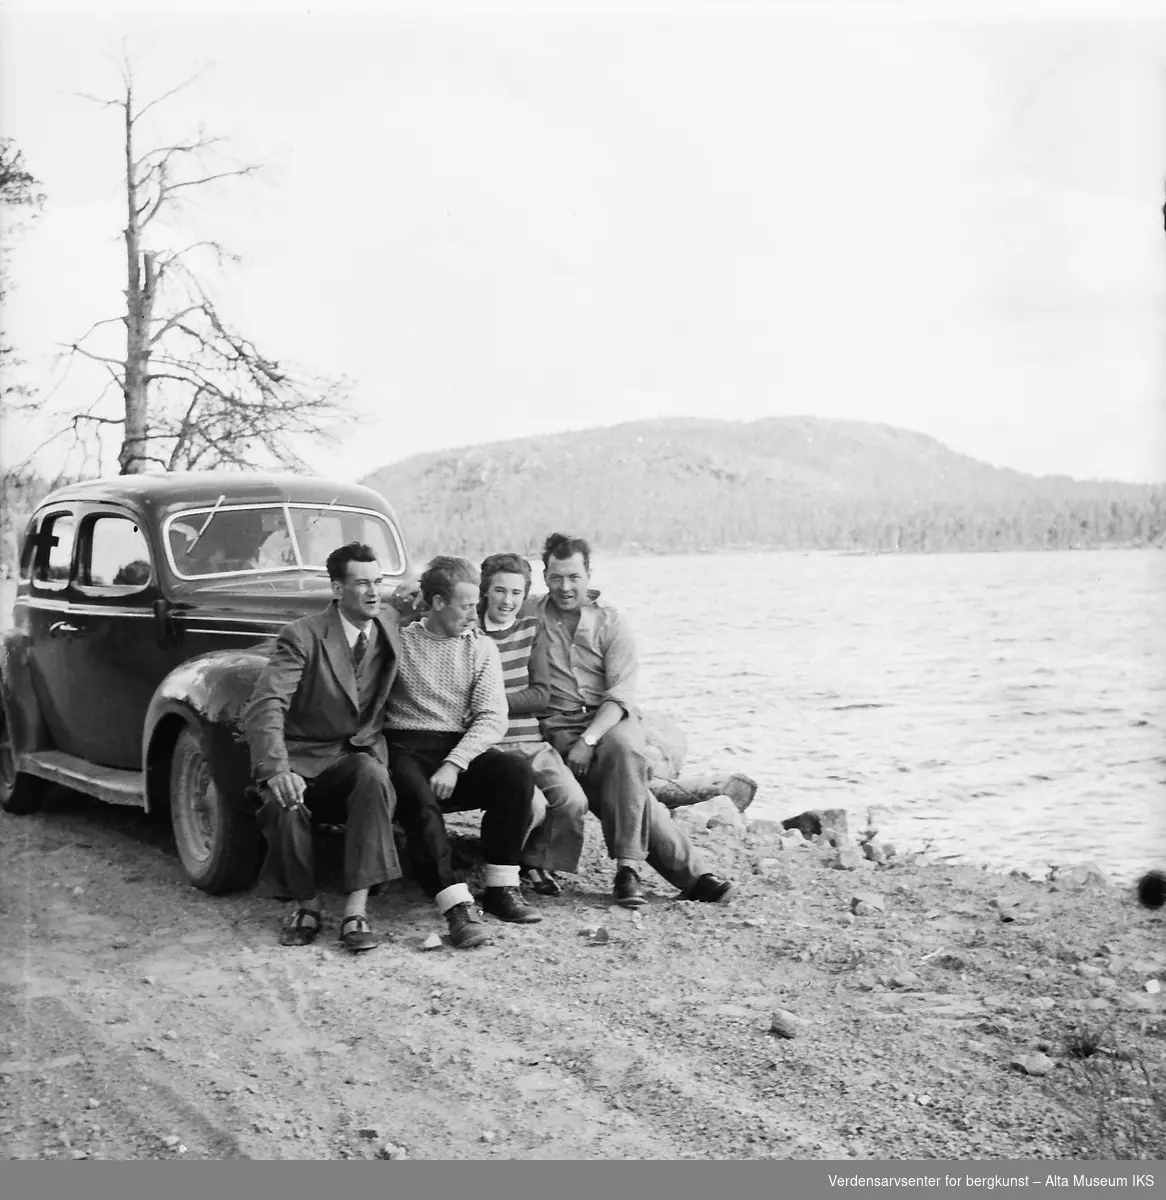 Fire reisende sitter på støtfangeren til bilen, med en innsjø i bakgrunnen. Bildet er fra en Finlandstur.